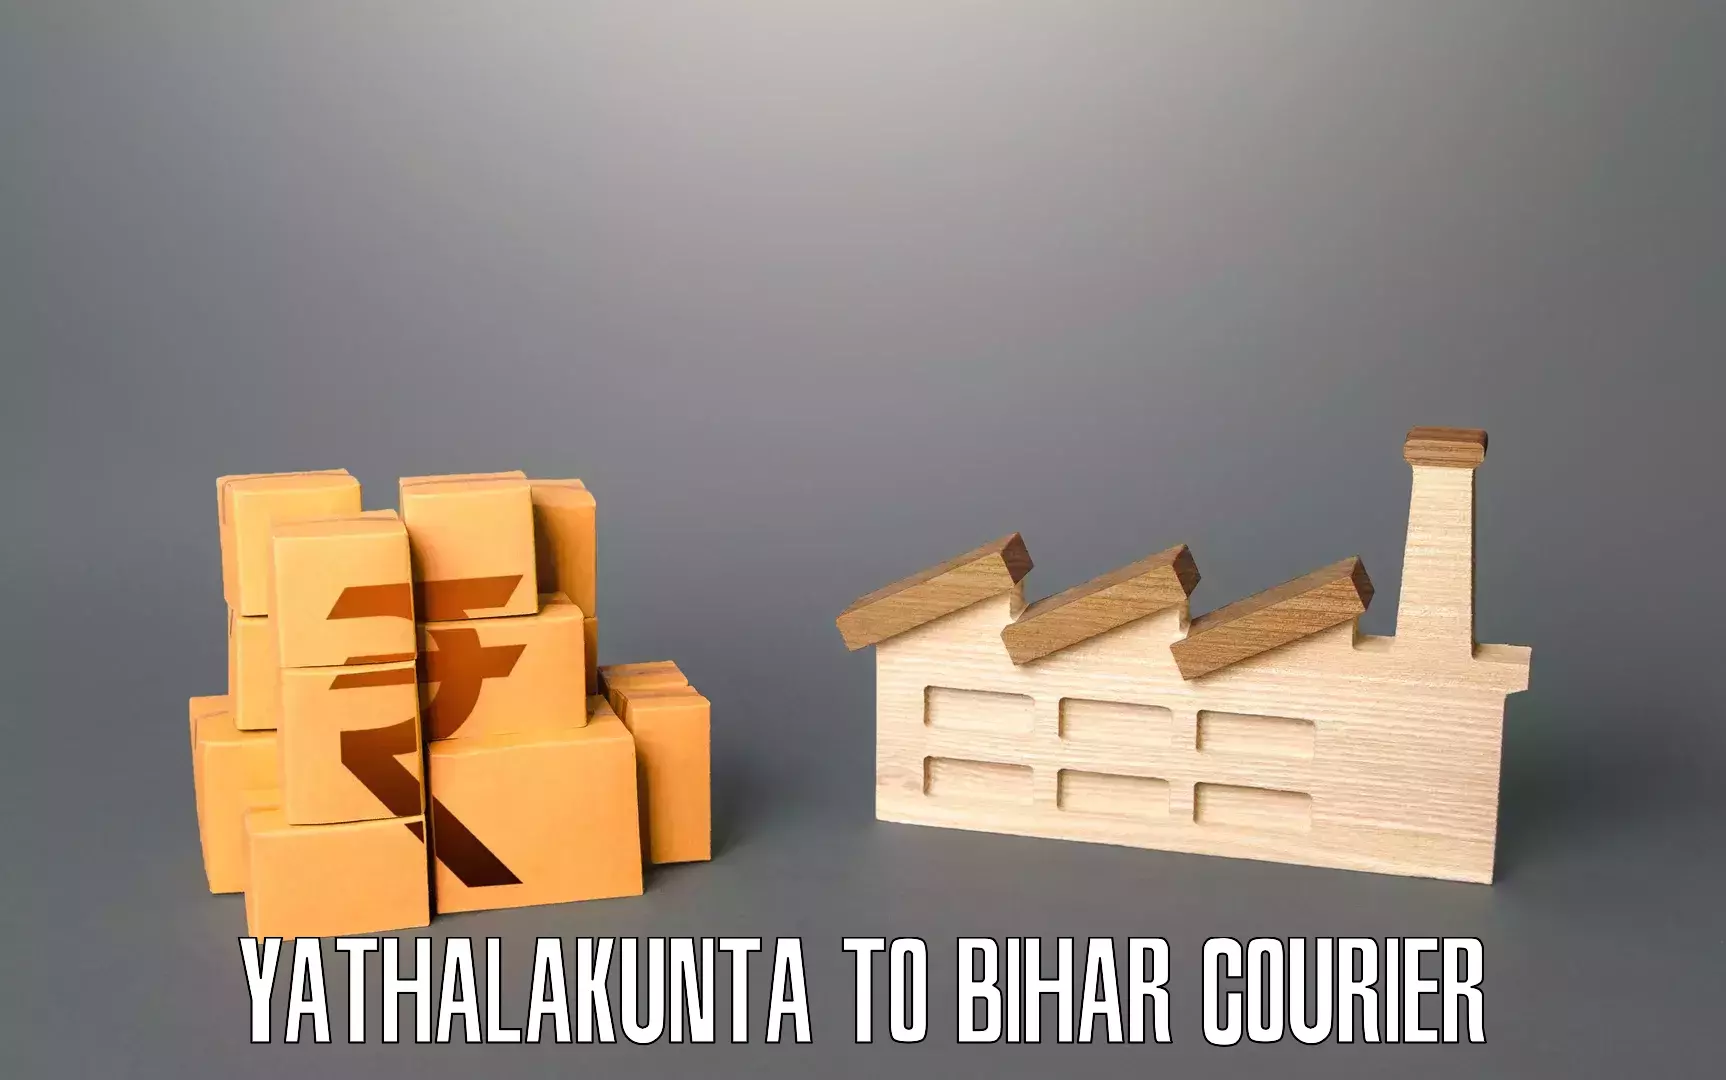 Personalized furniture moving Yathalakunta to Bihar